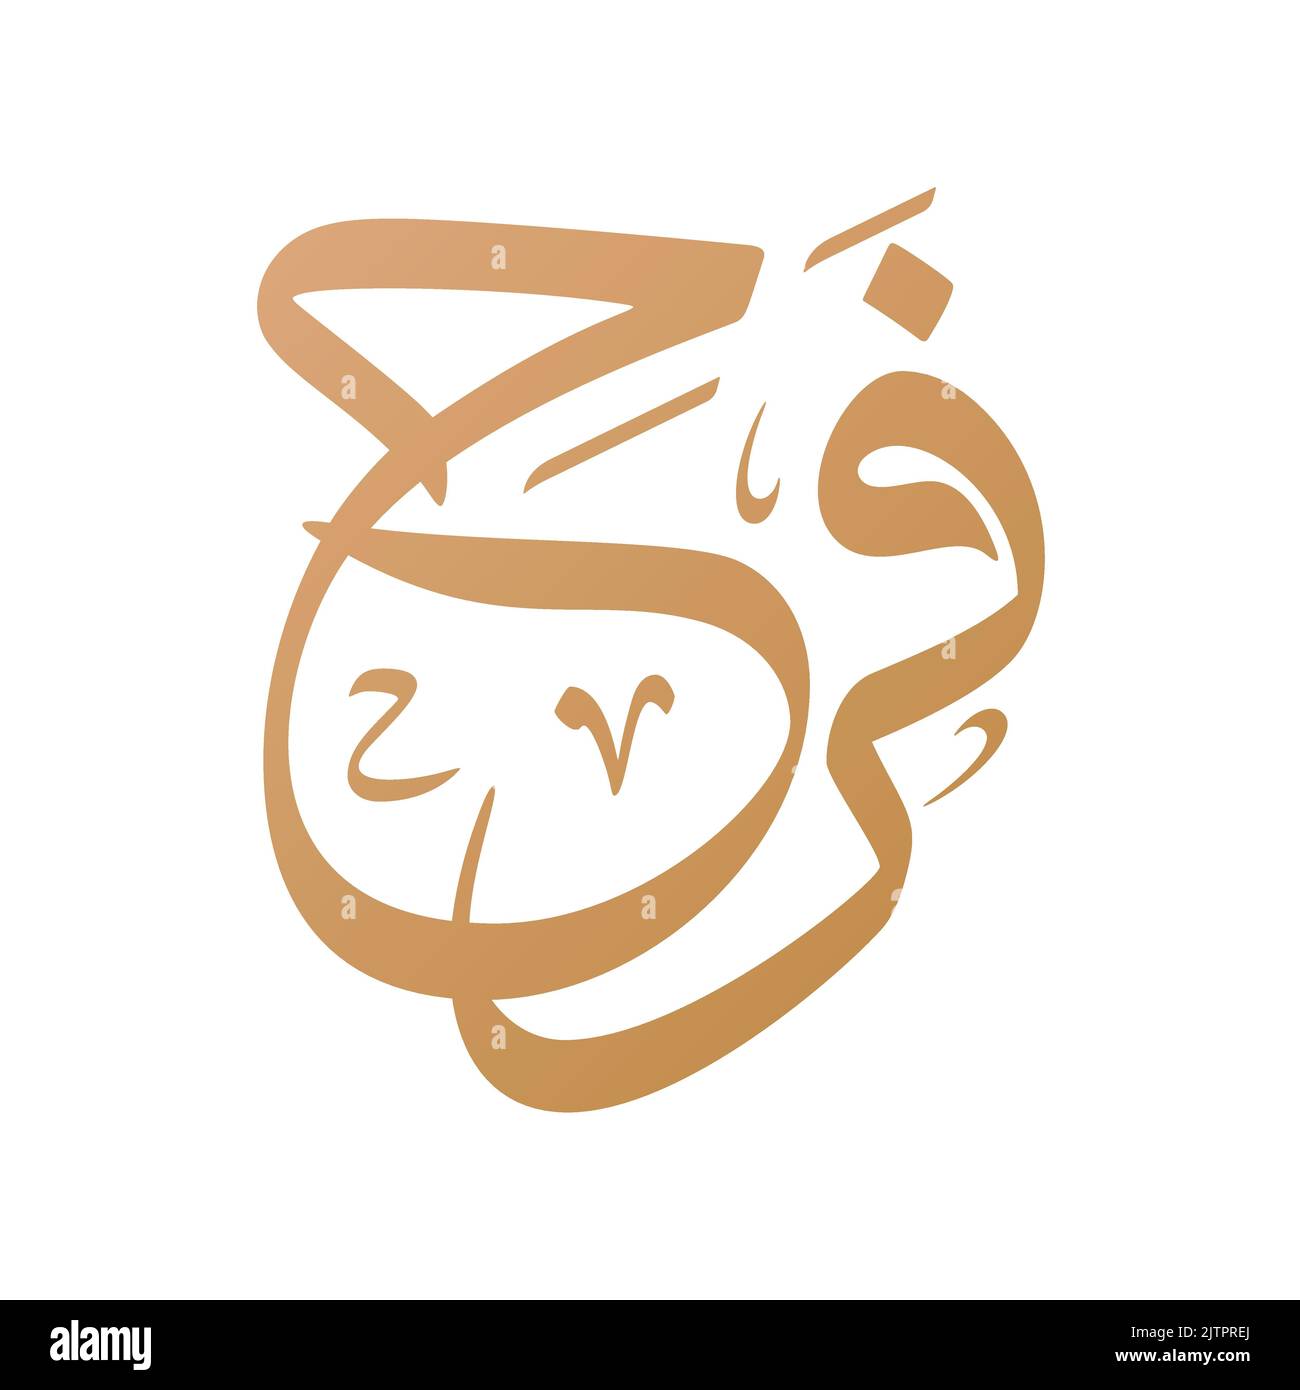 'Farah' Nome Calligraphy Arabo Vector Design. Traduzione: 'Farah' Illustrazione Vettoriale